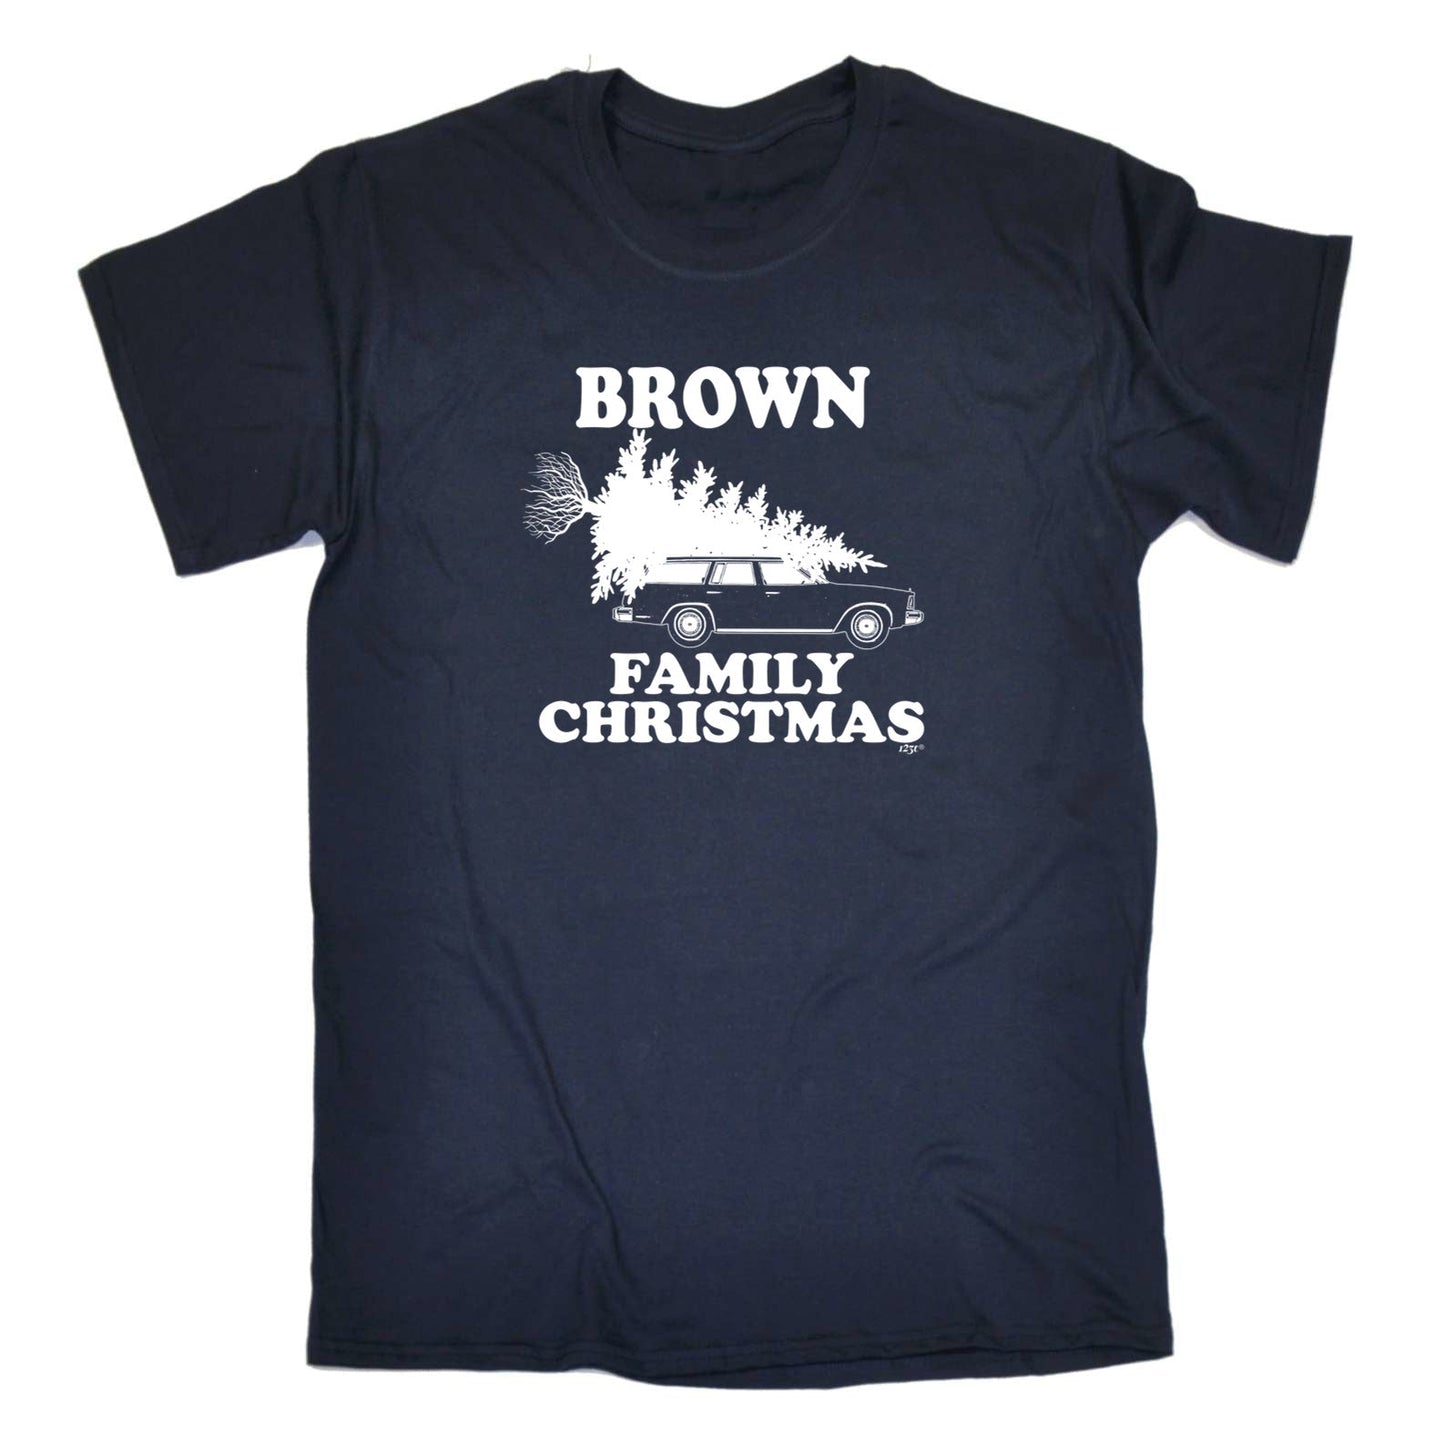 Family Christmas Brown - Mens Xmas Novelty T-Shirt / T Shirt